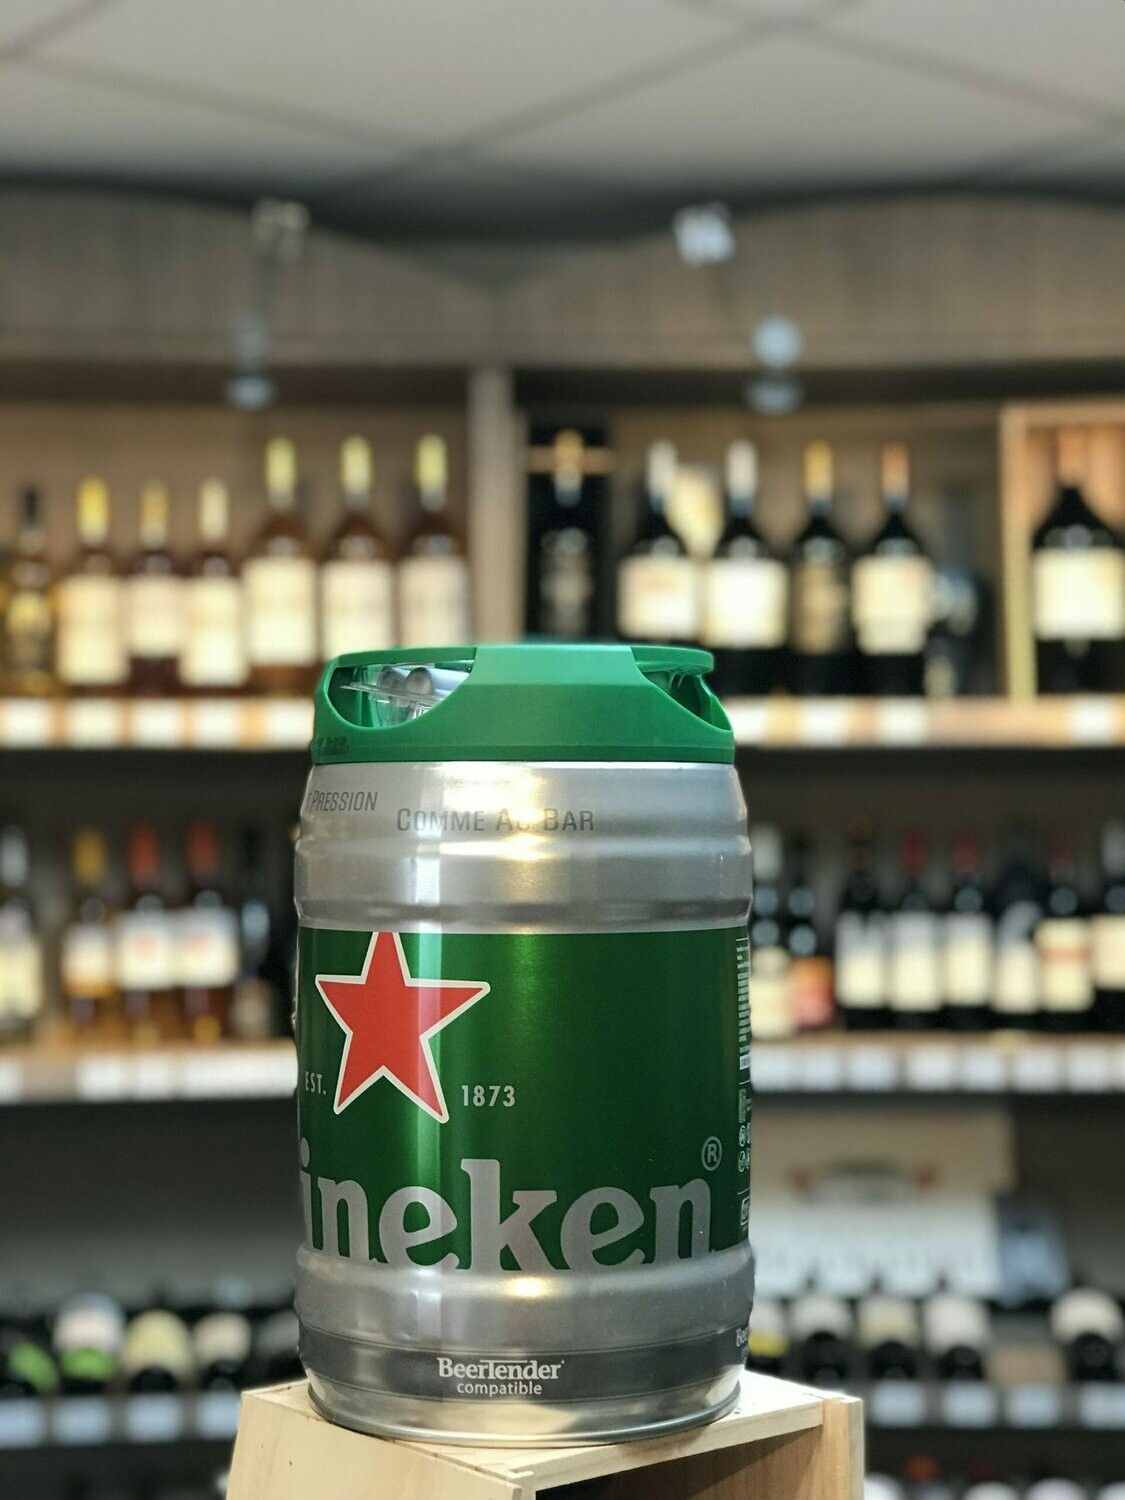 Heineken Fût de bière (5 l) 5°